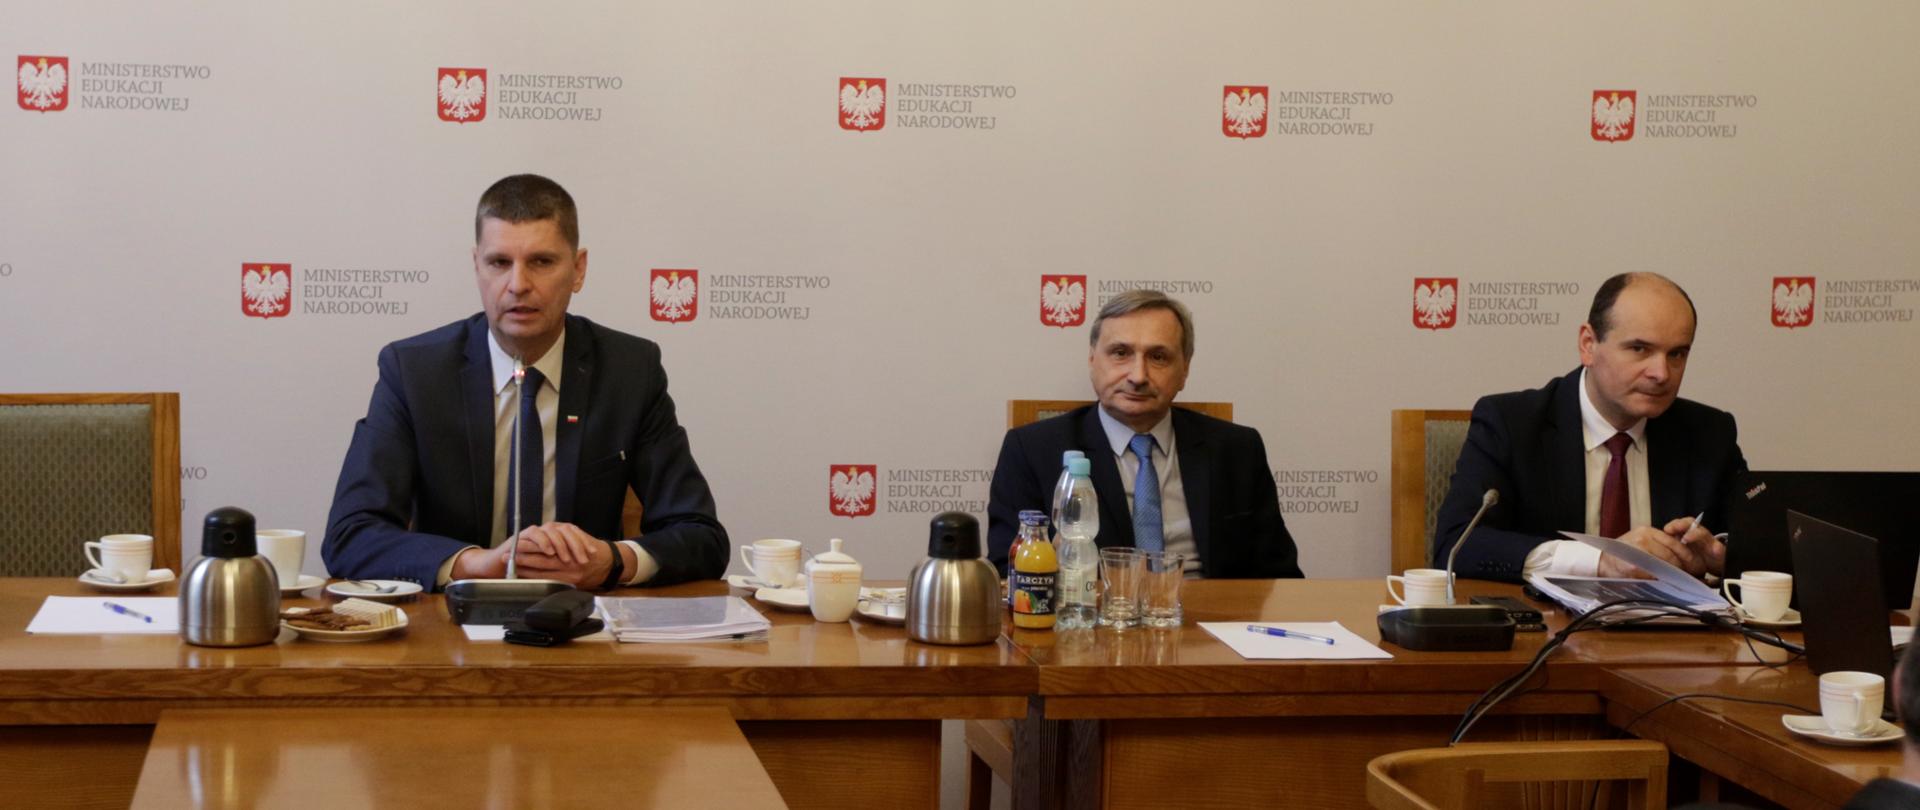 Minister edukacji i wiceminister Maciej Kopeć siedzą przy stole prezydialnym. W tle tablica z nazwą Ministerstw O edukacji Narodowej. 